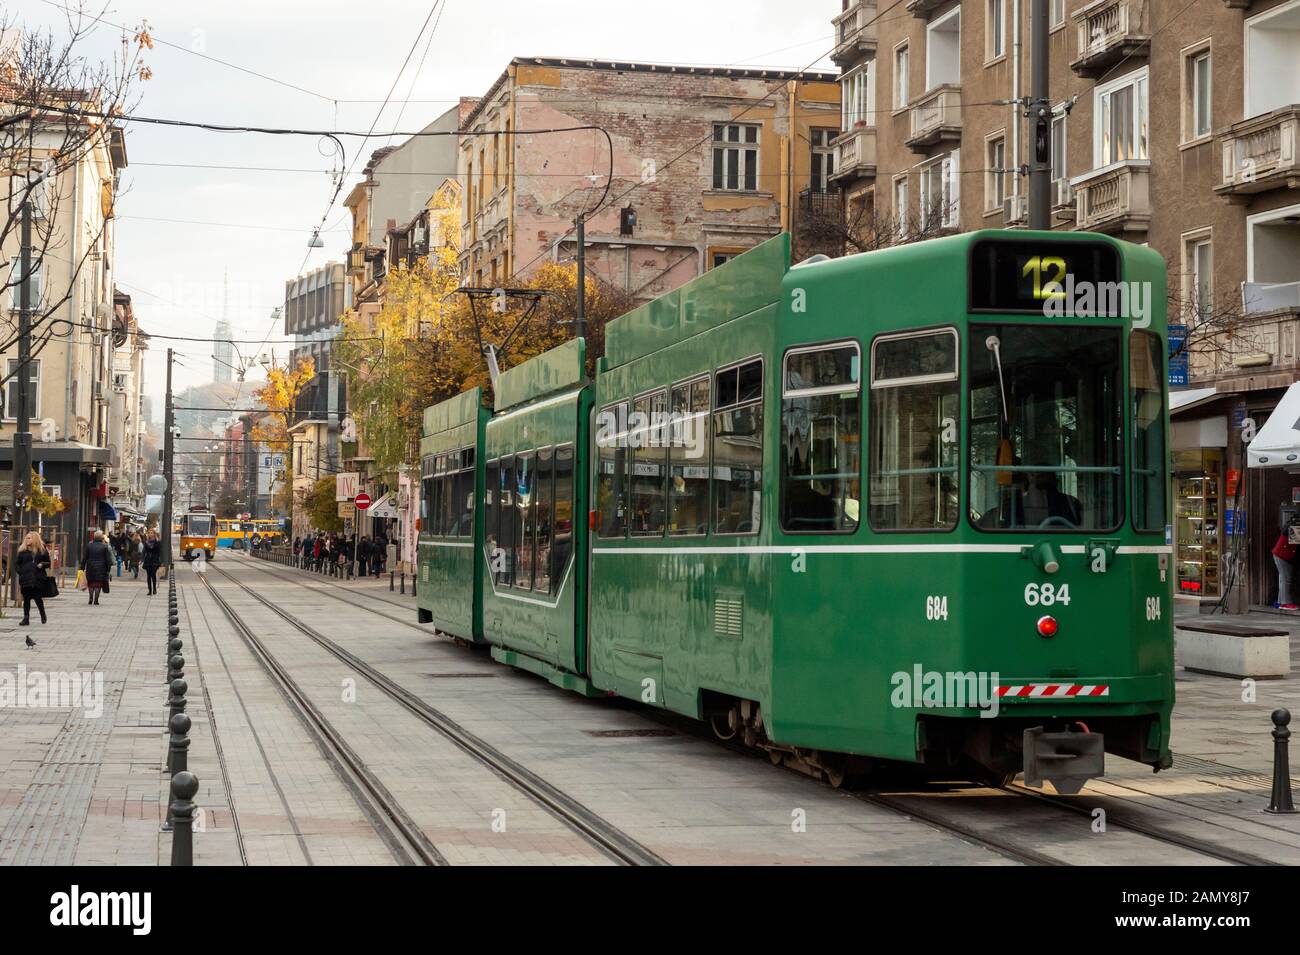 Blick auf die grüne Straßenbahn BE 4/6 S Schindler/Siemens auf der Straßenbahn Graf Ignatiev Street in Sofia, Bulgarien, Osteuropa, Balkan, EU Stockfoto